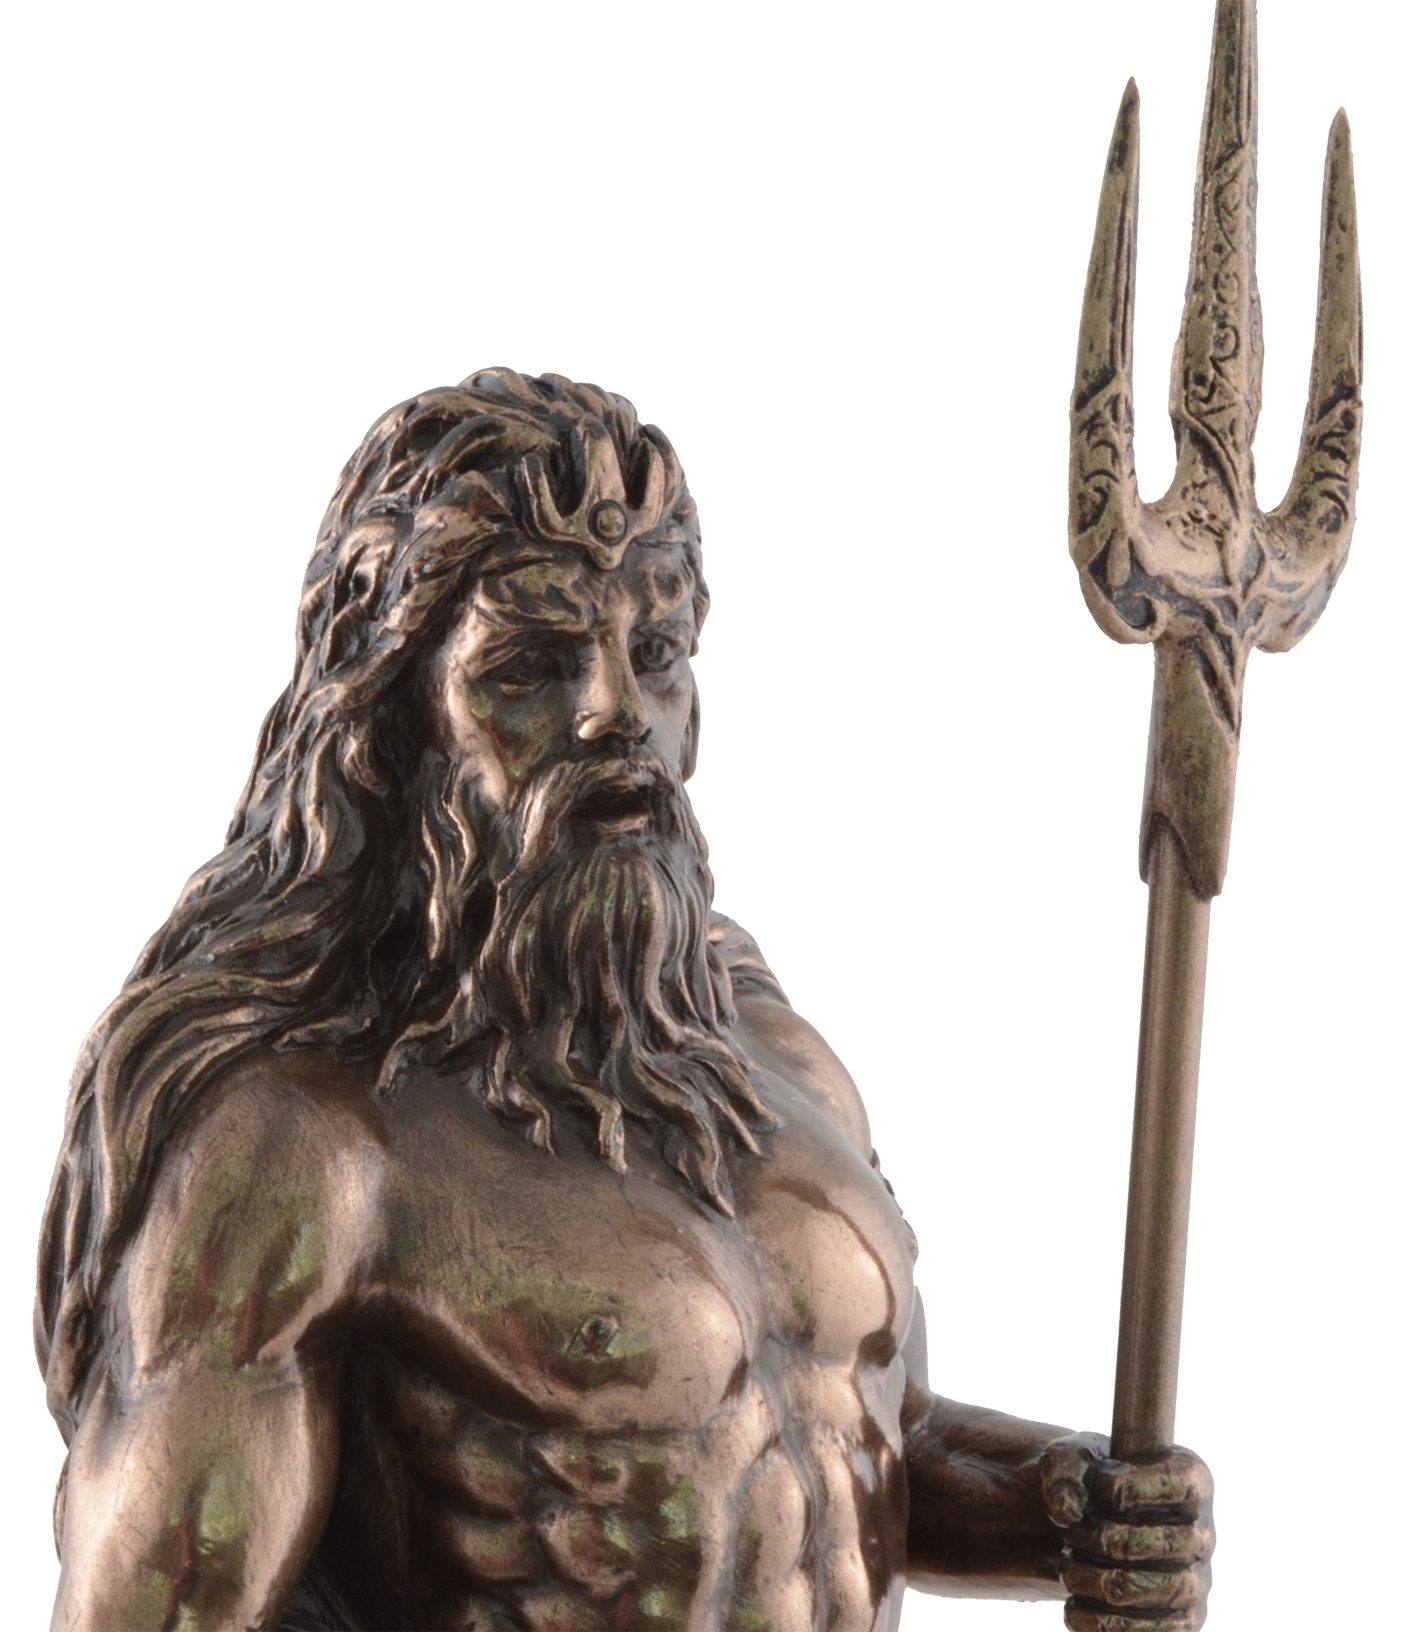 Vogler direct Gmbh Dekofigur Griechischer Veronesedesign, 8x7x18cm L/B/H ca. Poseidon, Gott Größe: bronziert/coloriert